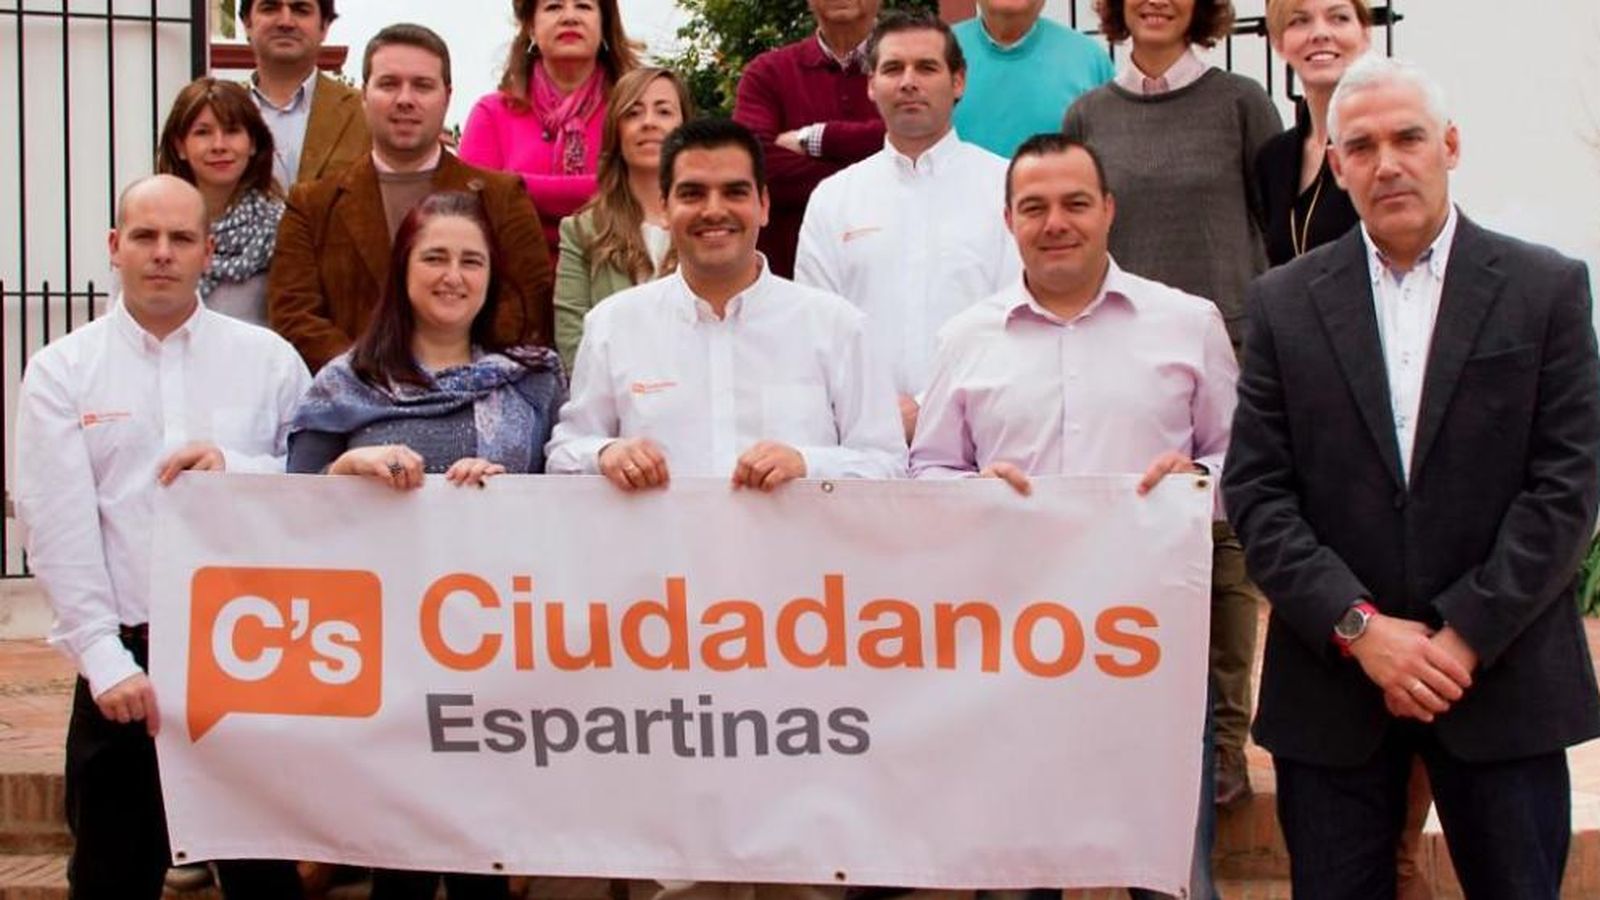 Foto: Imagen de algunos de los afiliados de Ciudadanos Espartinas. En el centro, José Maria Fernández, candidato a la alcaldía. (Ciudadanos Espartinas)